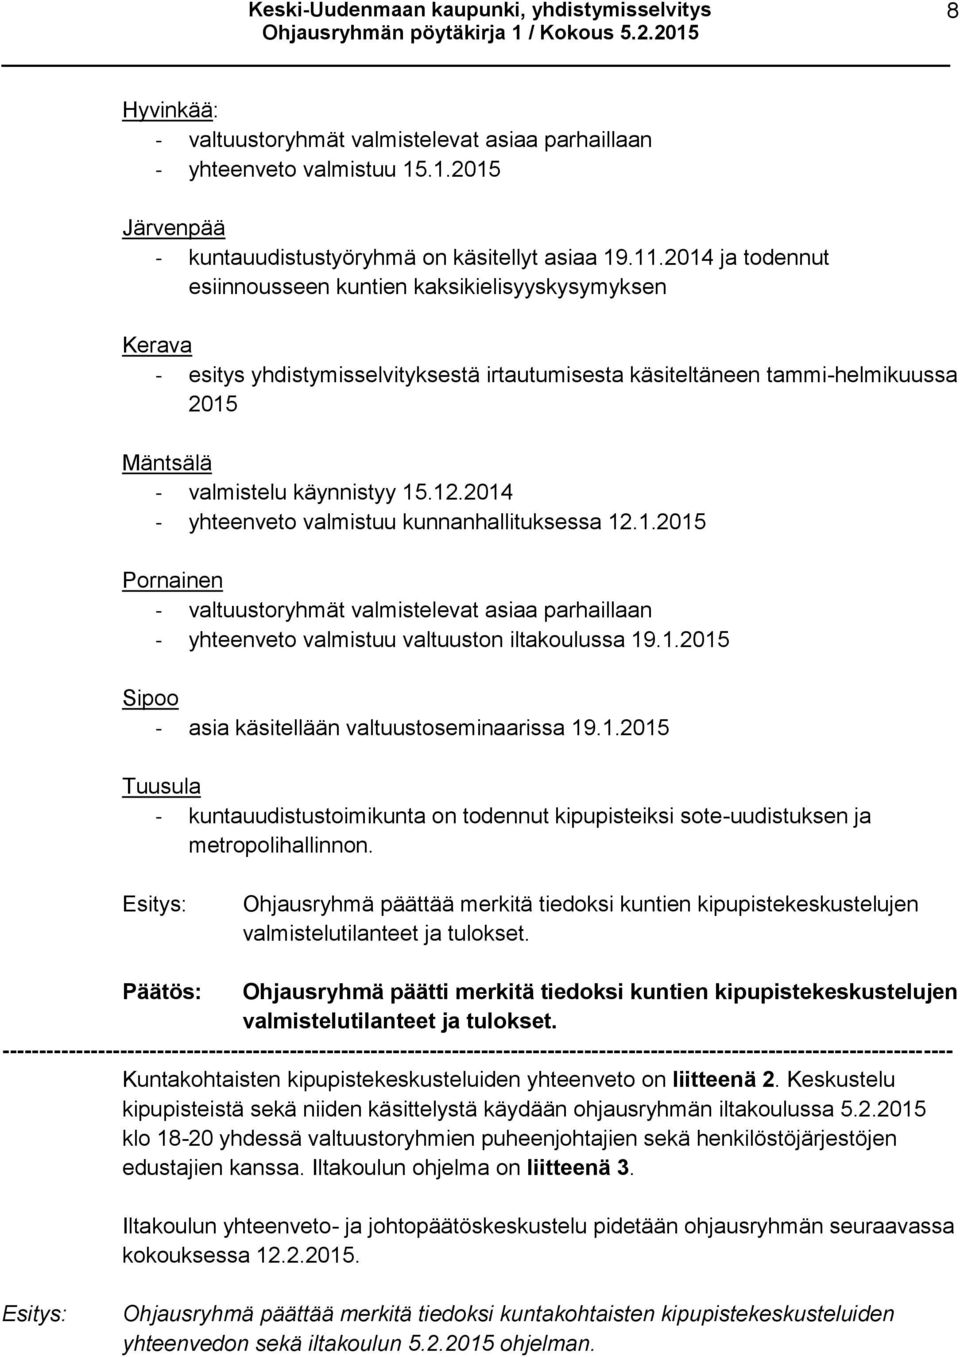 2014 - yhteenveto valmistuu kunnanhallituksessa 12.1.2015 Pornainen - valtuustoryhmät valmistelevat asiaa parhaillaan - yhteenveto valmistuu valtuuston iltakoulussa 19.1.2015 Sipoo - asia käsitellään valtuustoseminaarissa 19.